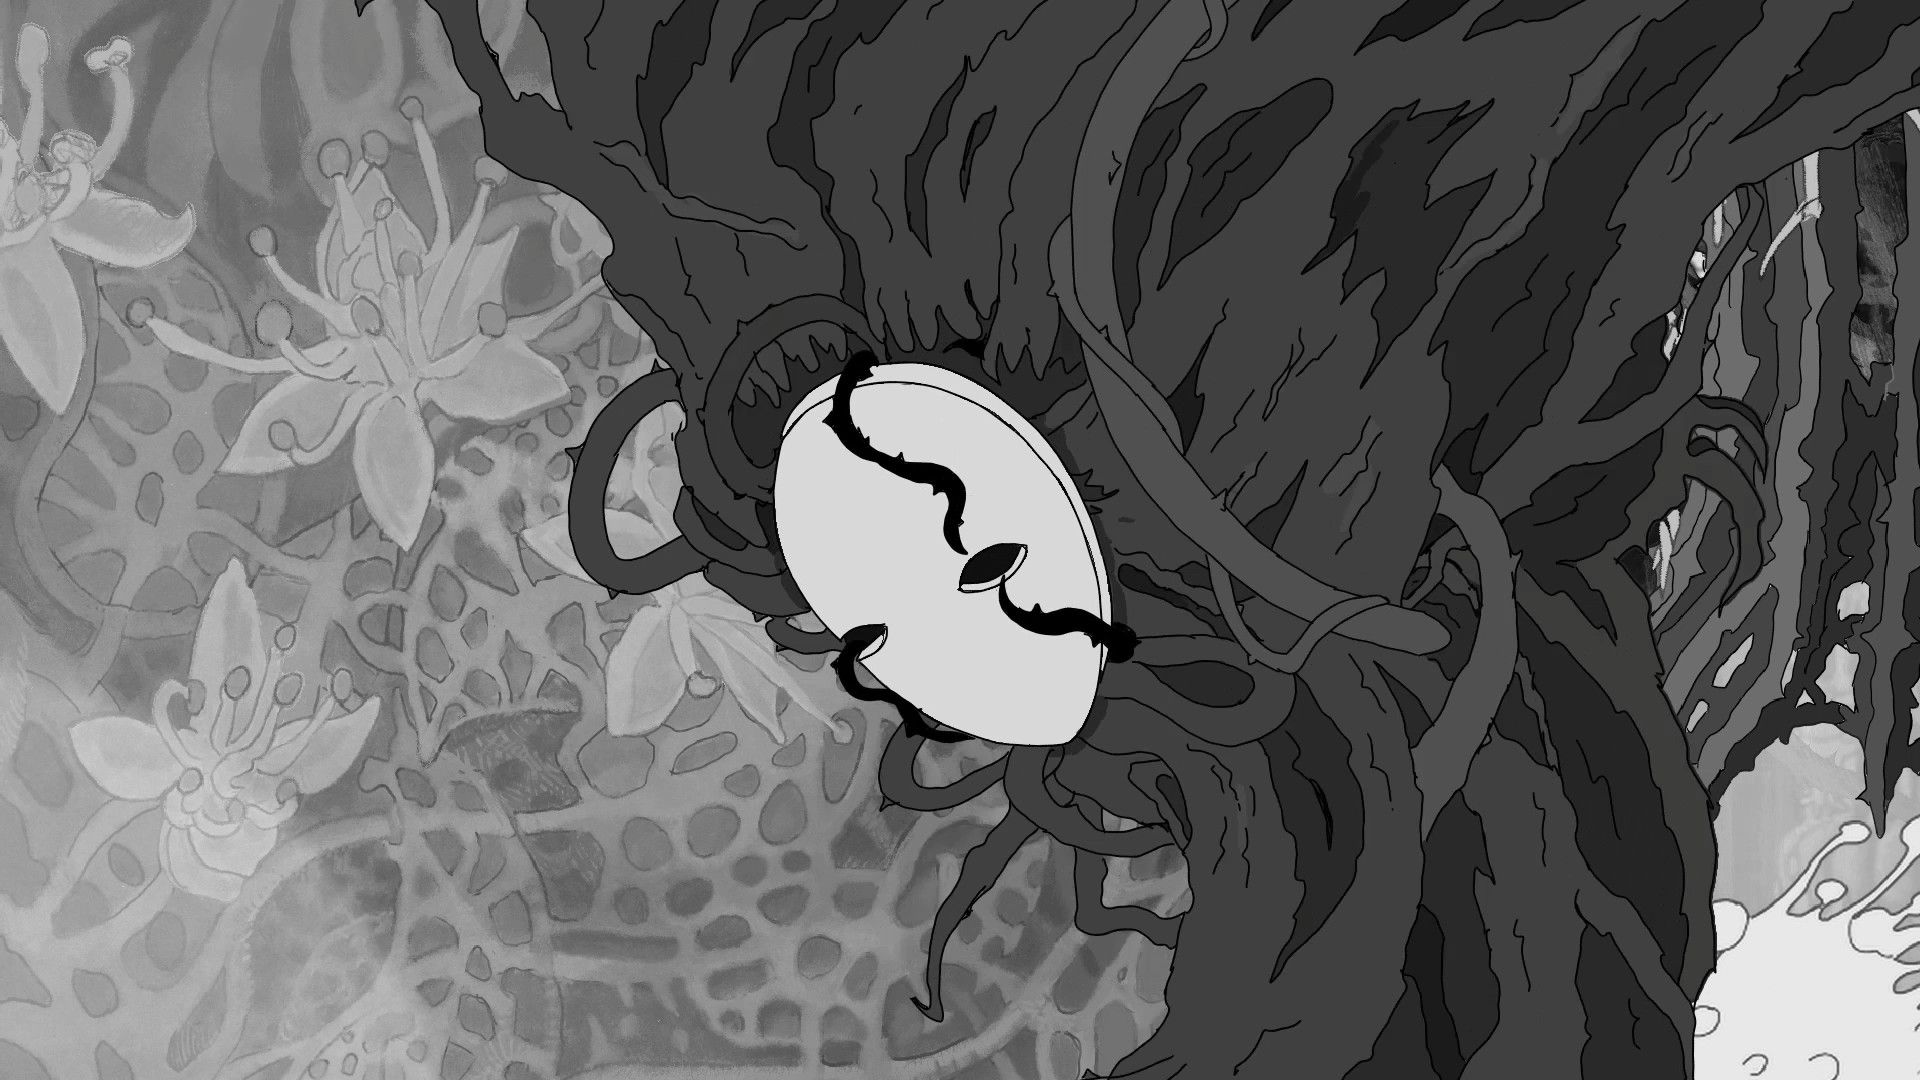 Image de Bioid avec un arbre étrange portant un masque, en noir et blanc